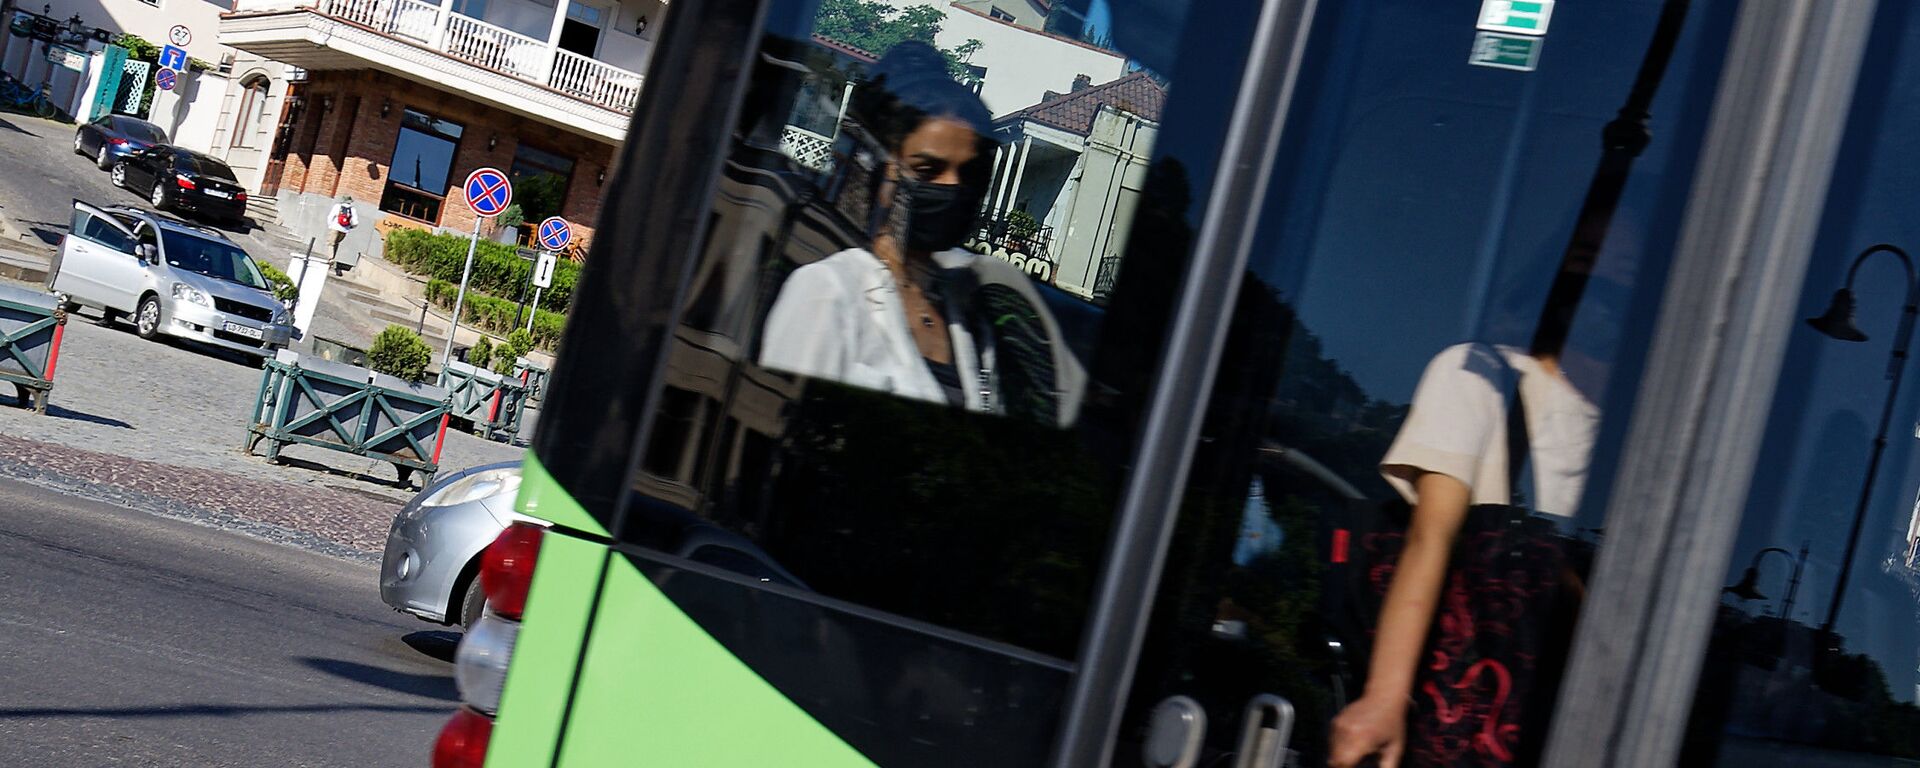 Эпидемия коронавируса - девушка в автобусе в маске - Sputnik Грузия, 1920, 02.09.2021